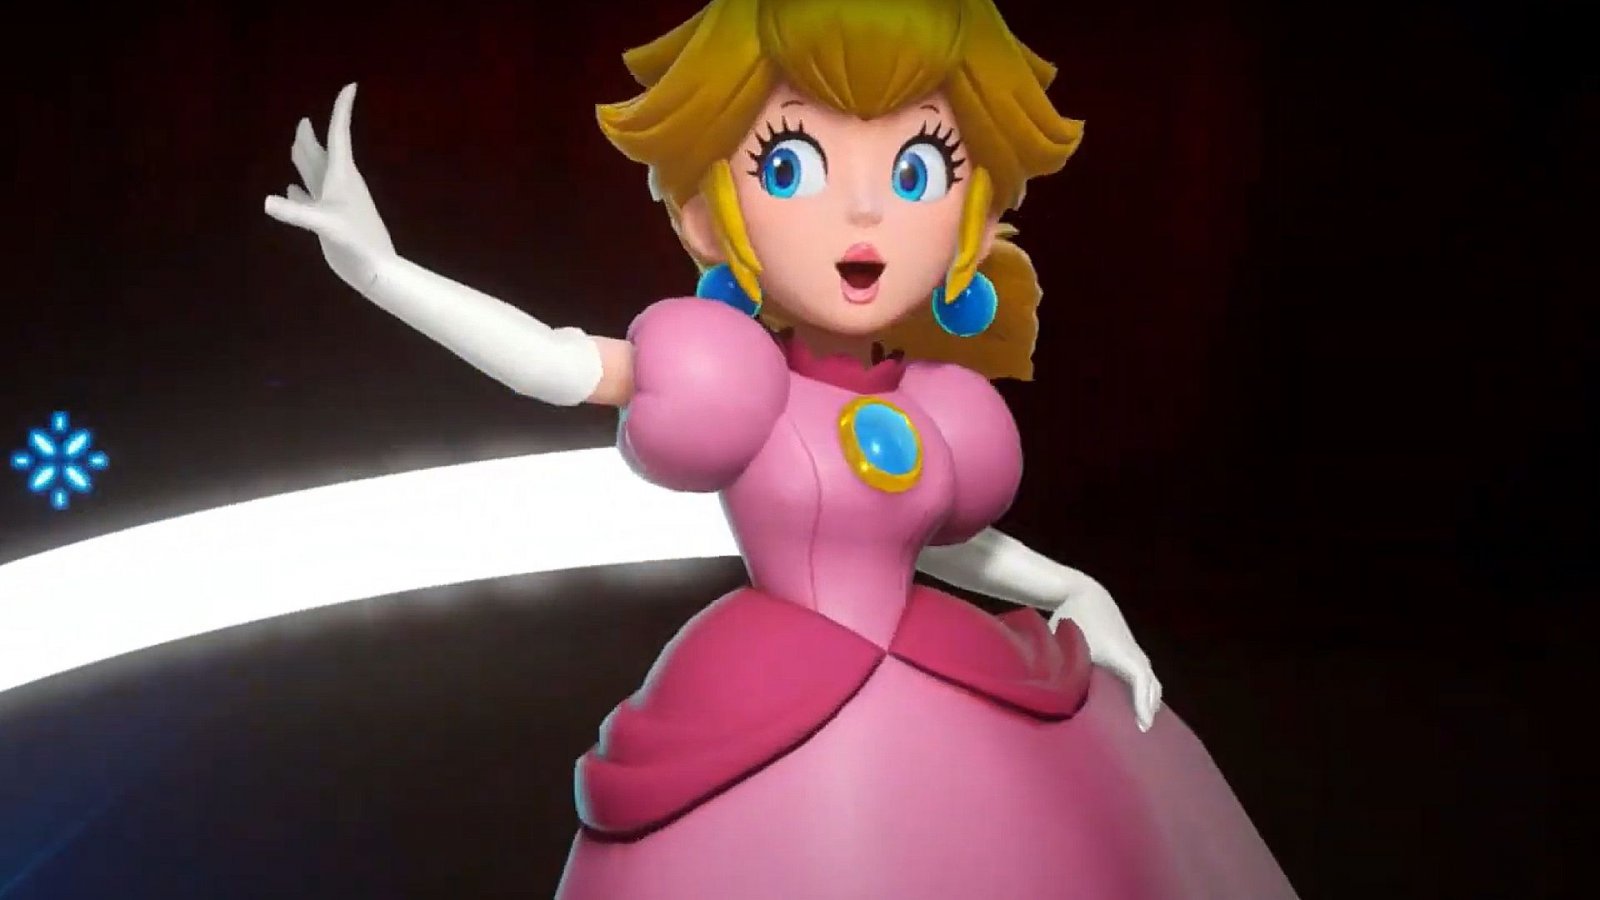 Peach, annunciato con teaser un gioco per Nintendo Switch dedicato alla principessa